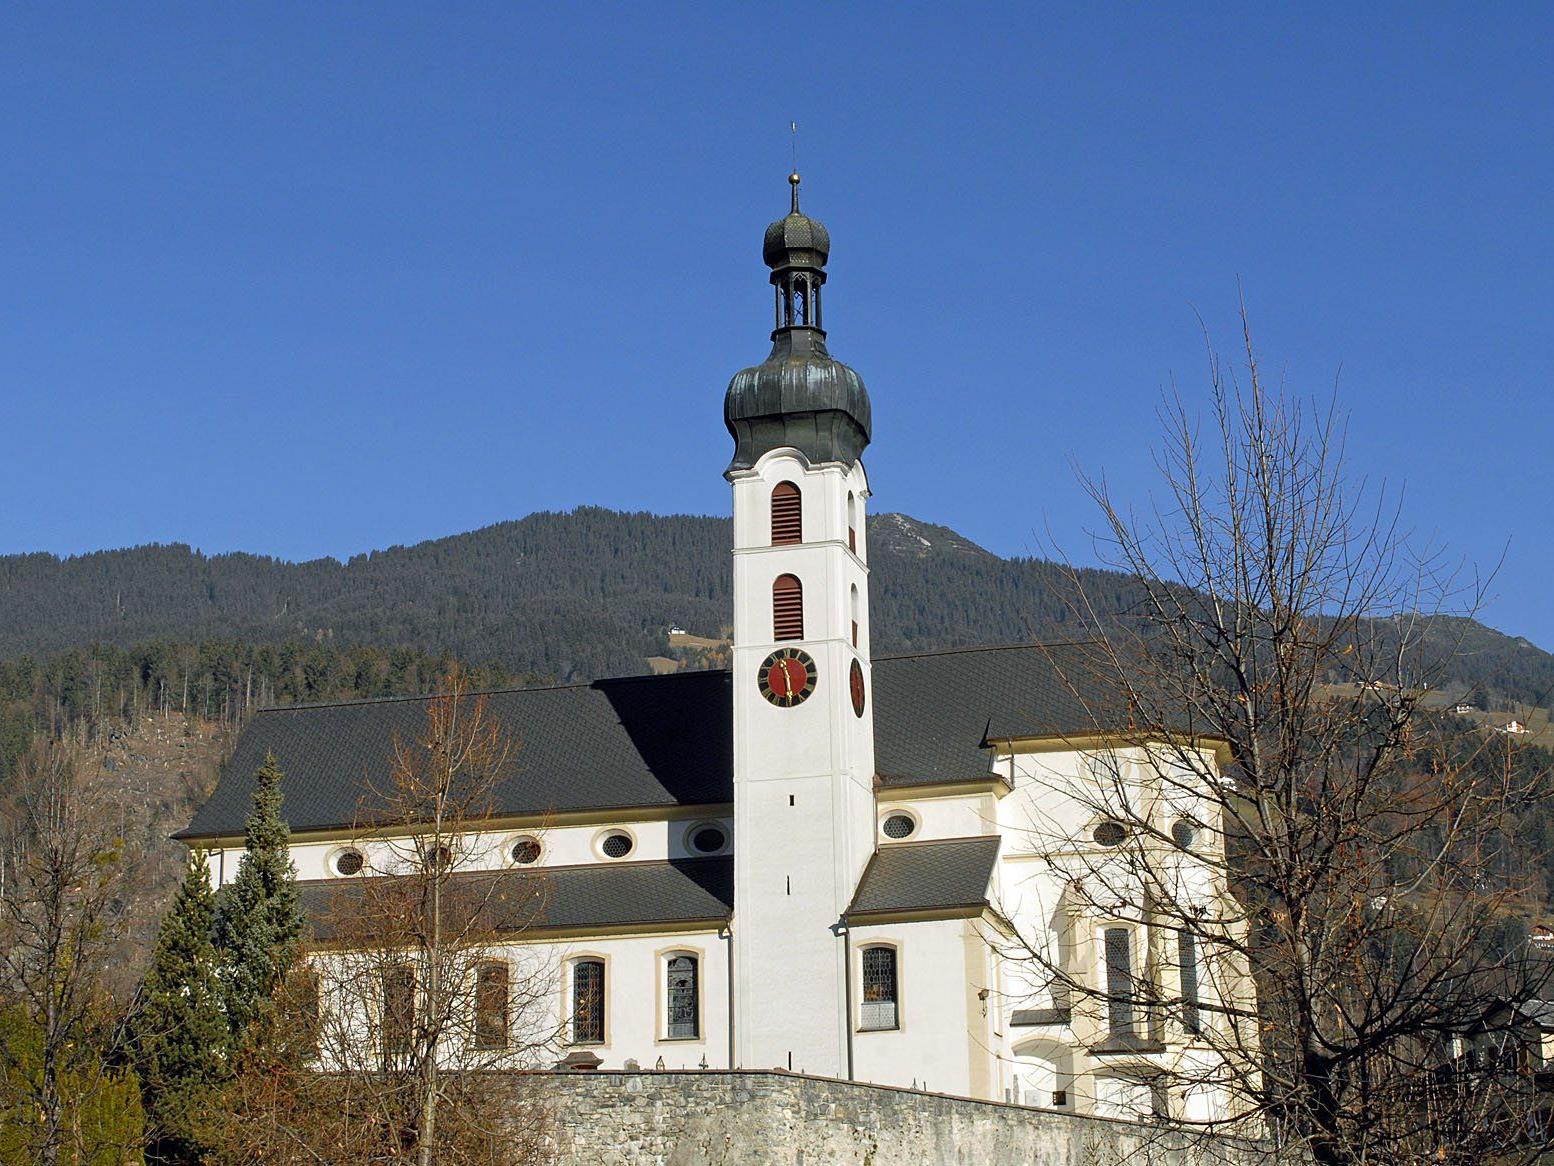 Pfarrkirche Tschagguns, am 23. November 2011 (Archivfoto).